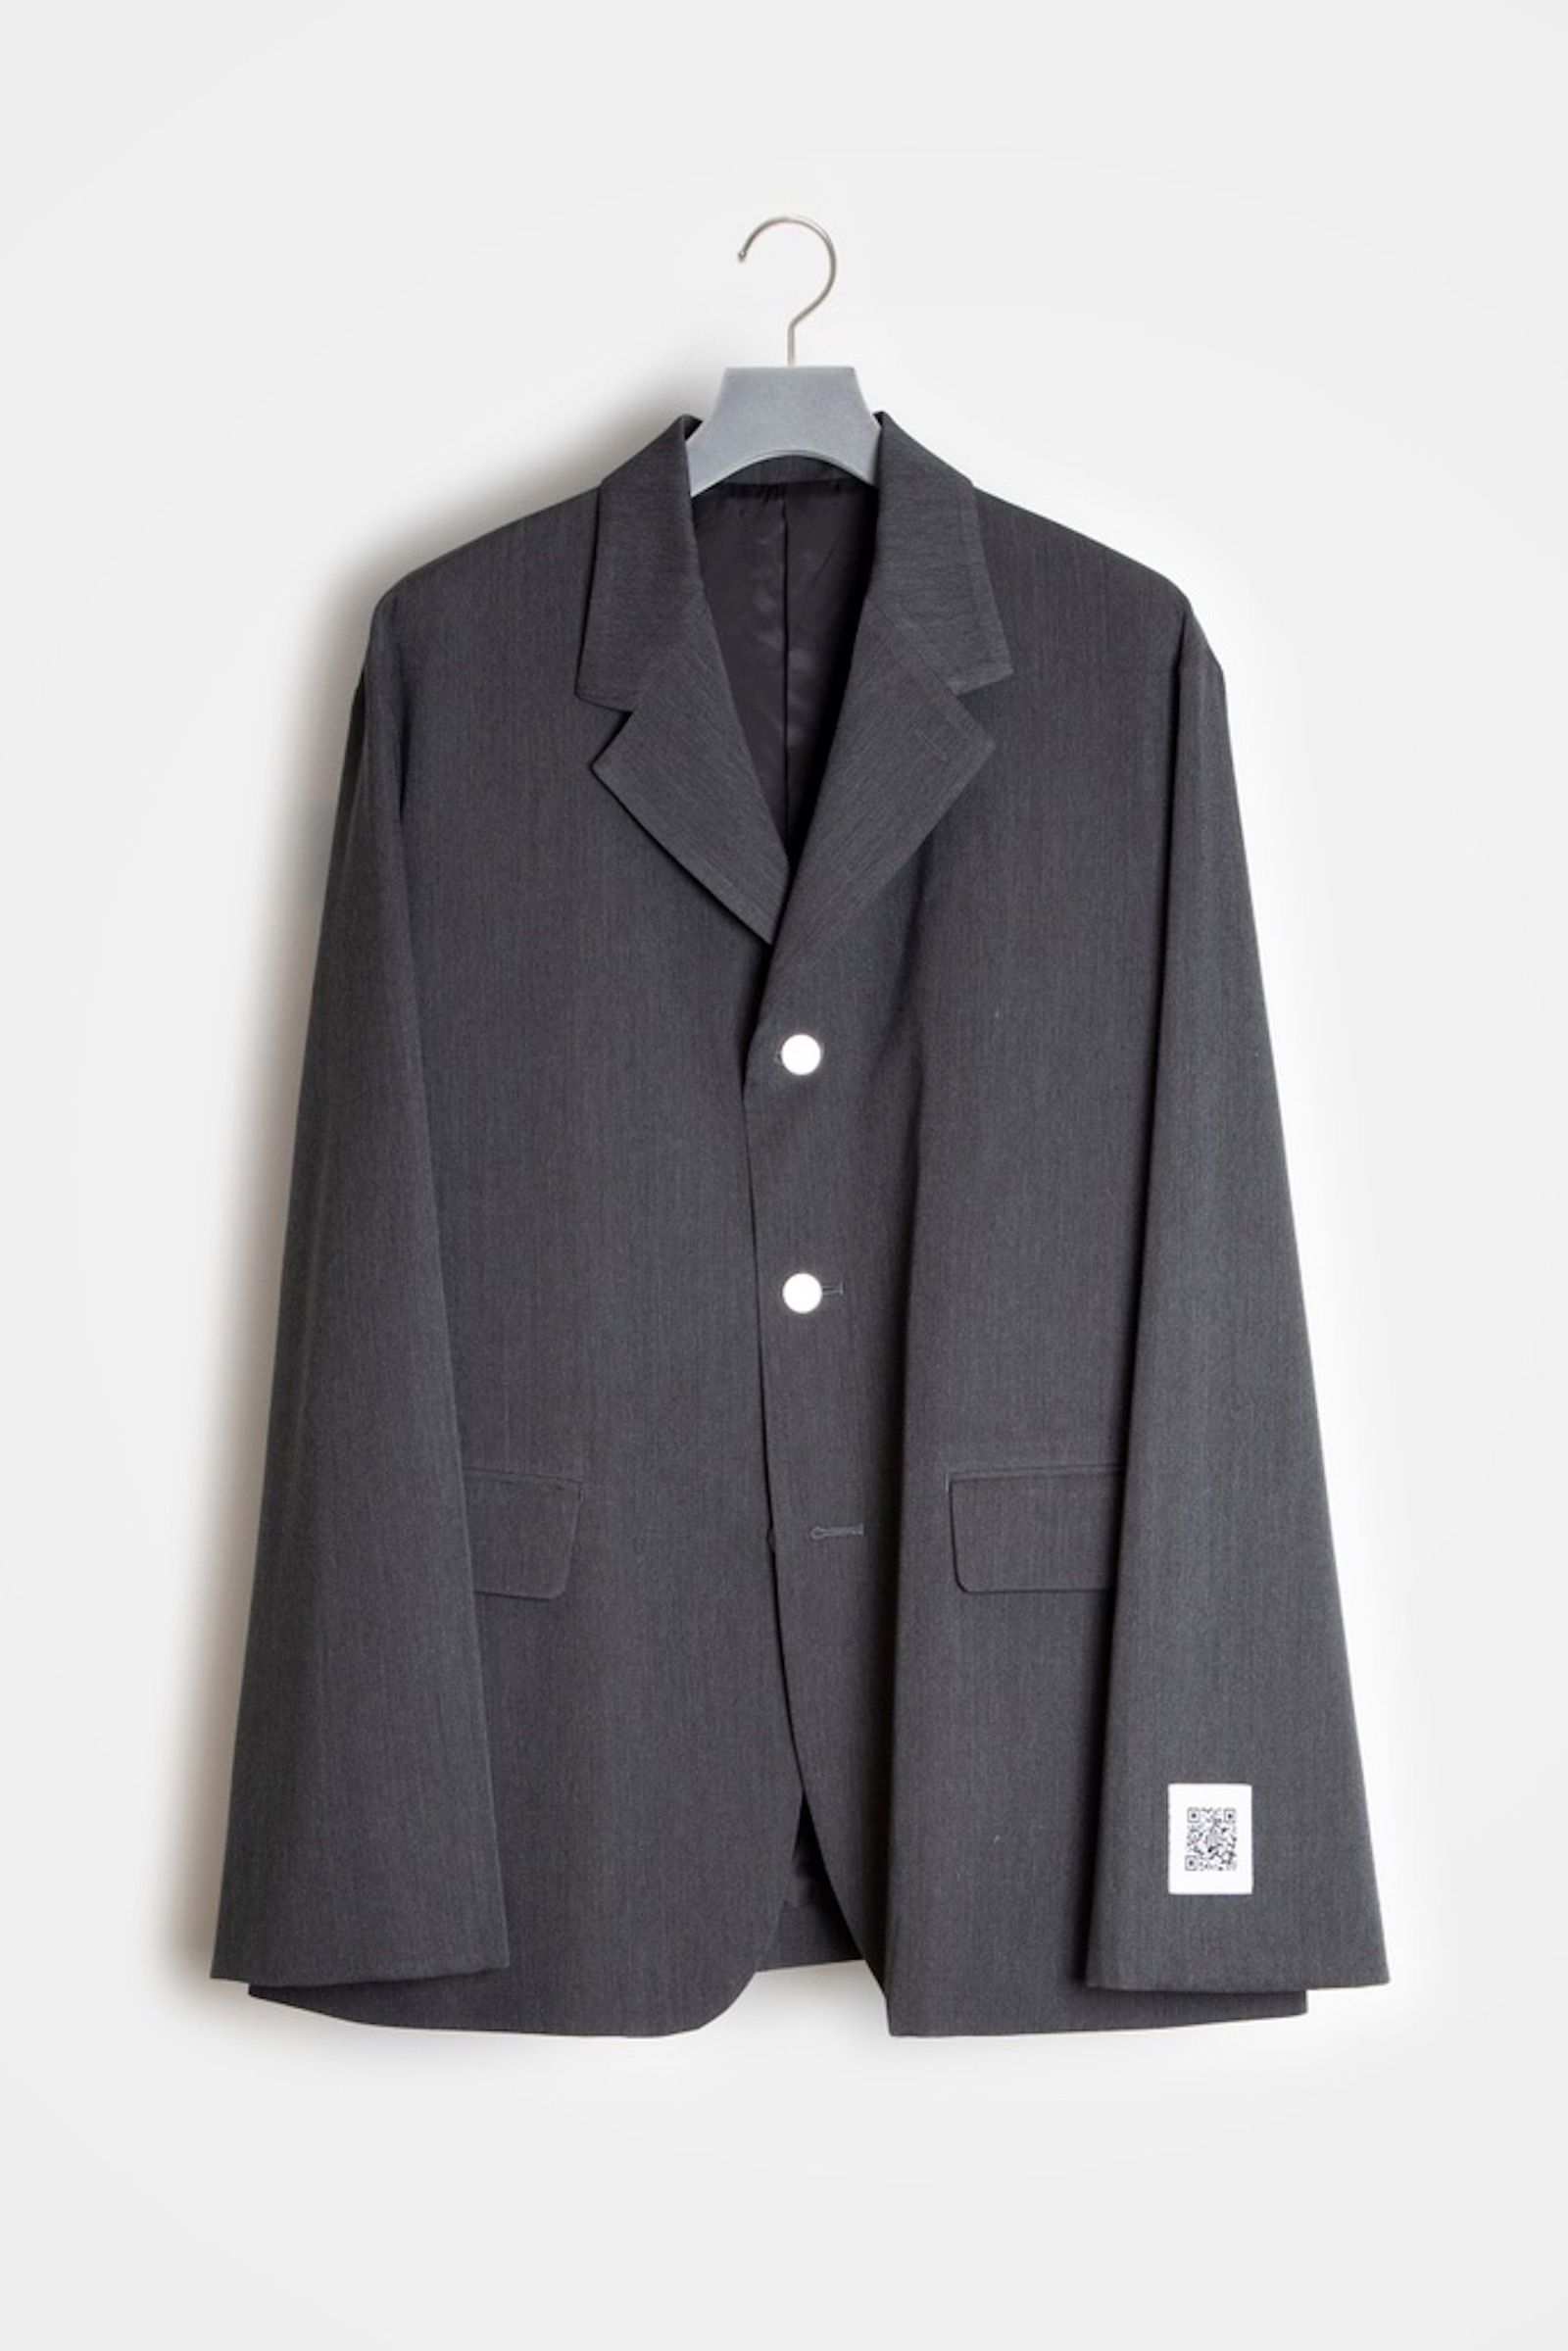 FUMITO GANRYU - flattened jacket 21aw | asterisk